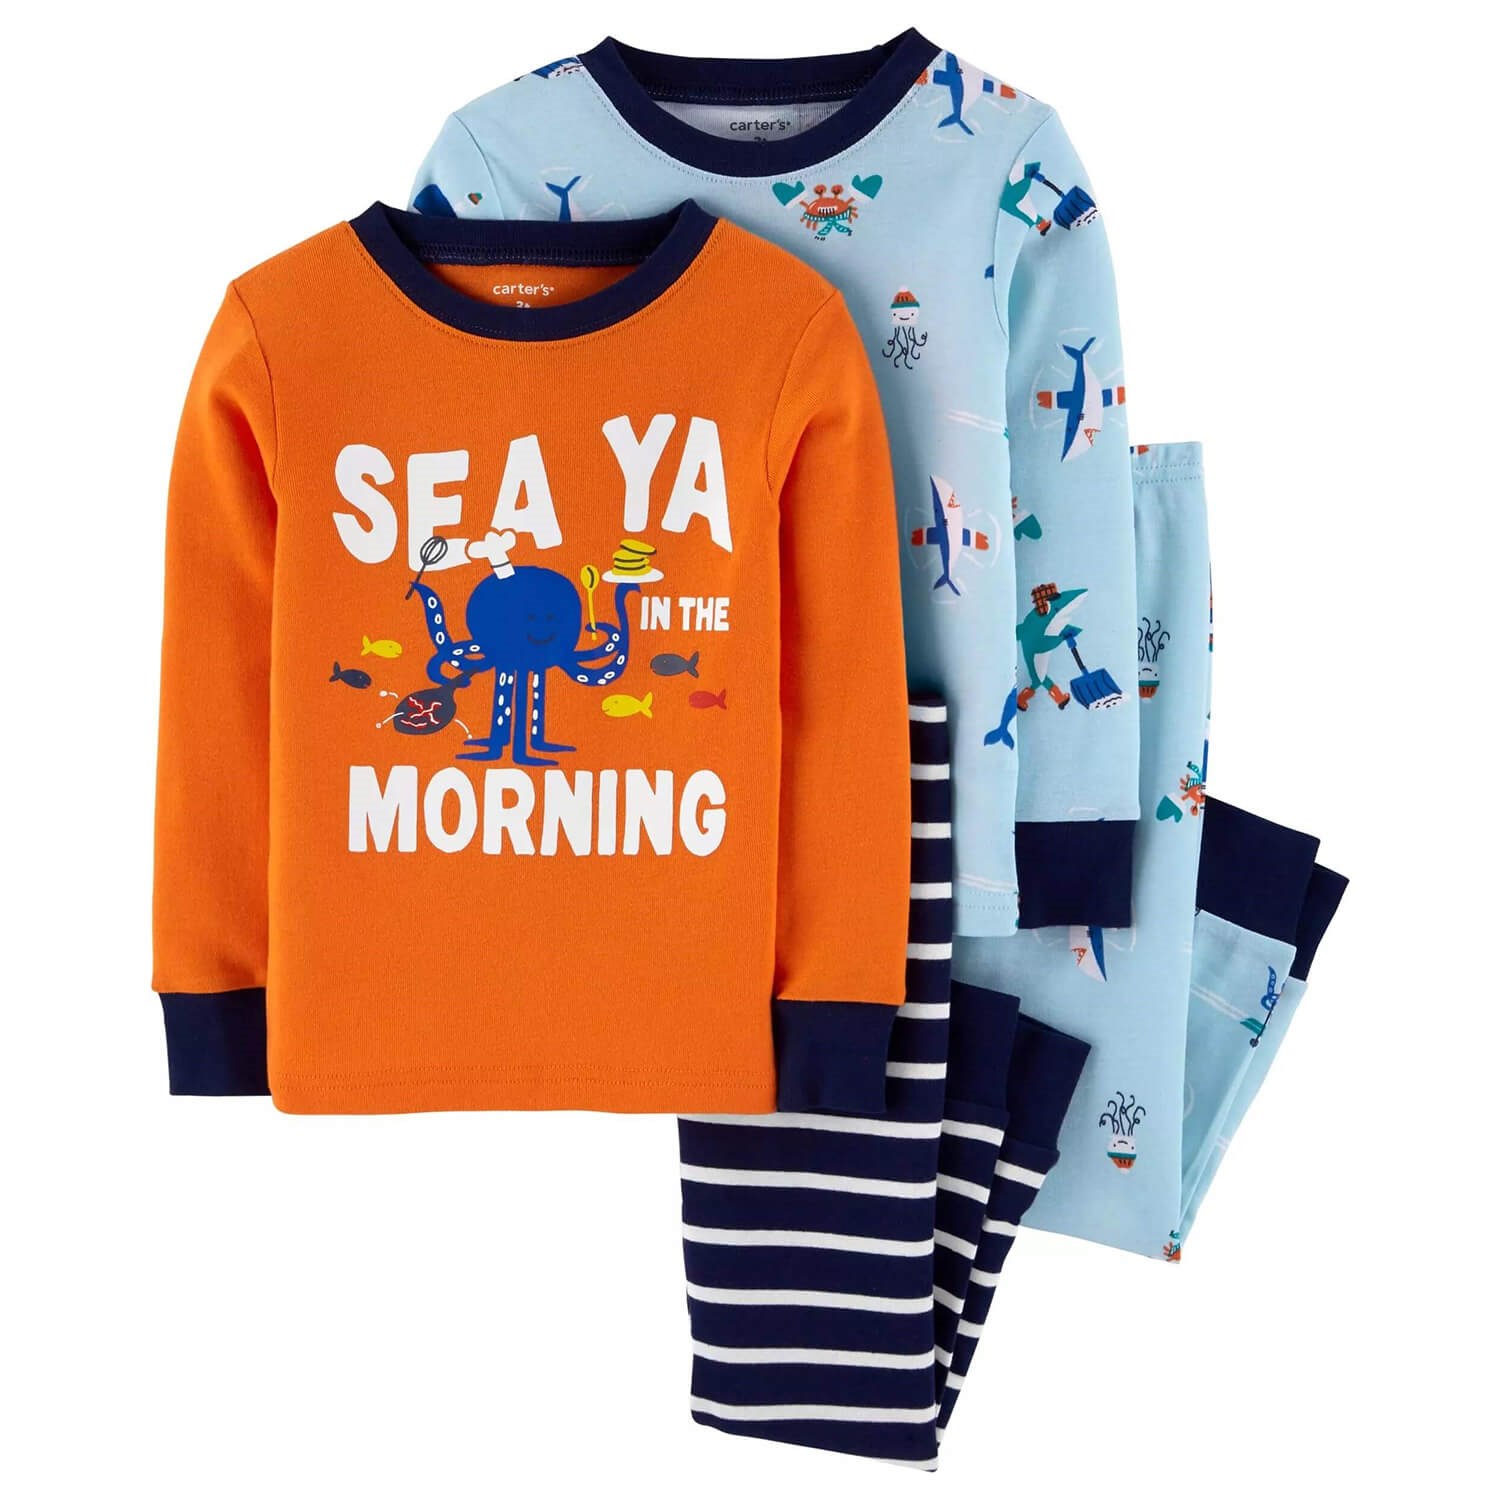 Carter's Deniz Hayvanları 4'lü Çocuk Pijama Takımı Mavi-Turuncu